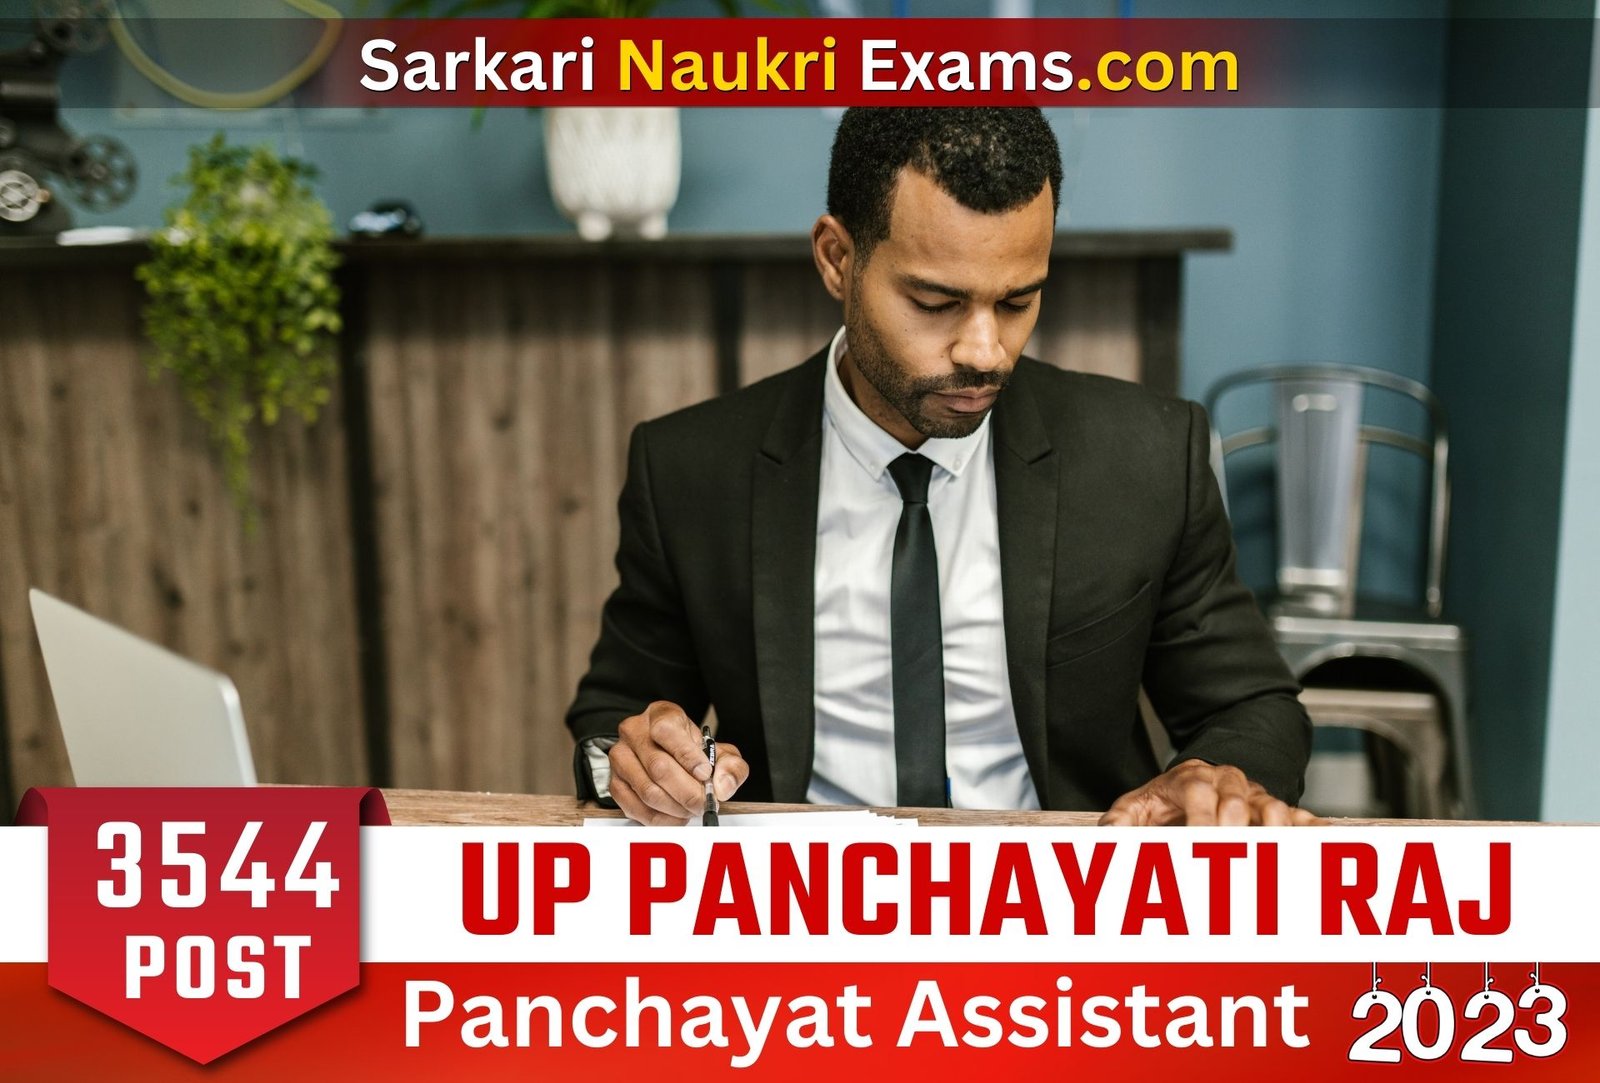 UP Panchayati Raj Panchayat Sahayak Recruitment 2023 | 3544 Post Vacancy Apply Online